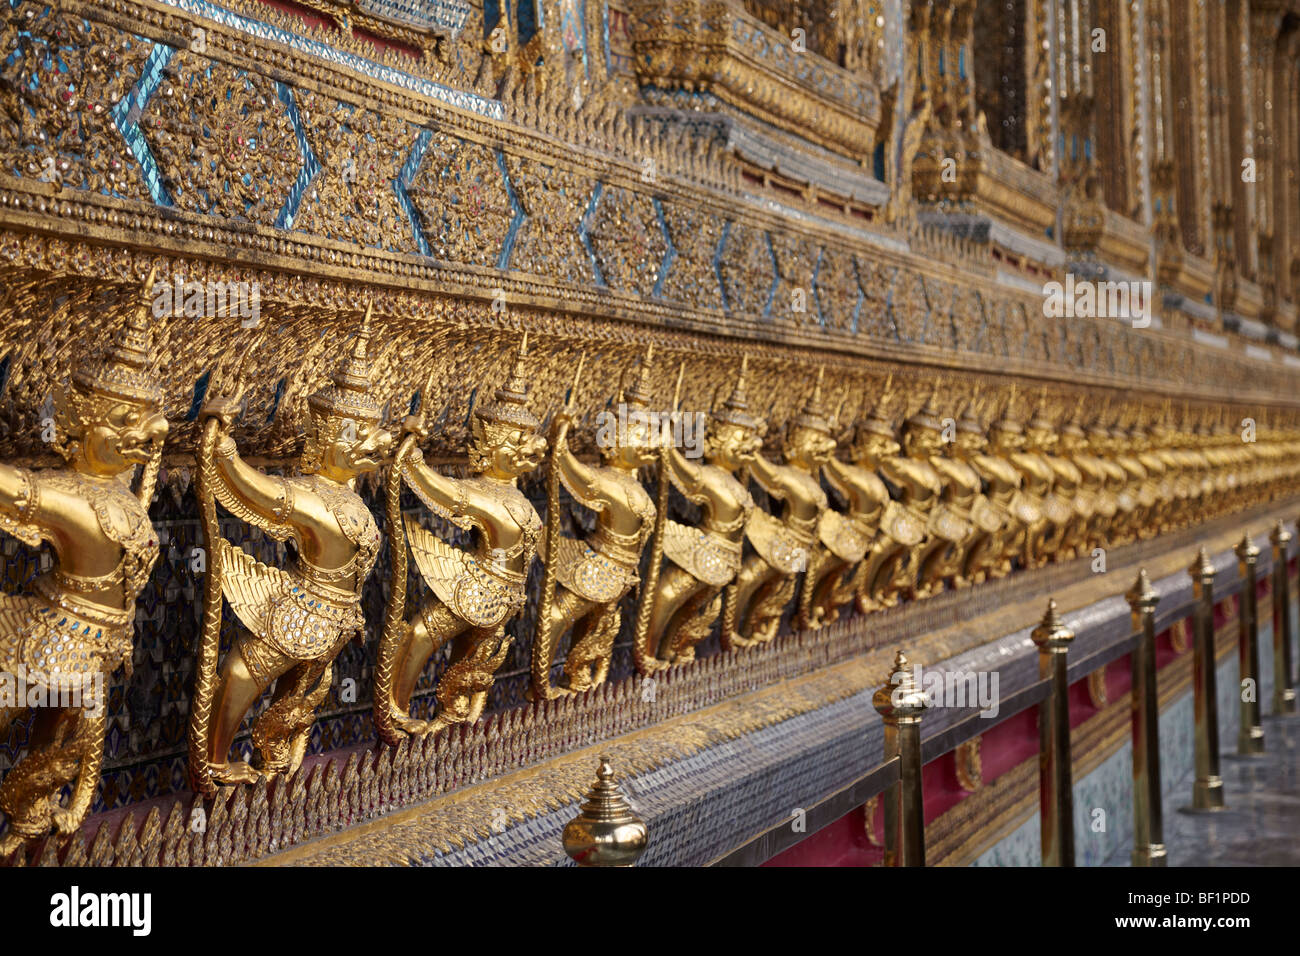 Wat Phra Kaeo (Tempel des Smaragd-Buddha) & Royal Grand Palace, Bangkok, Thailand. Stockfoto